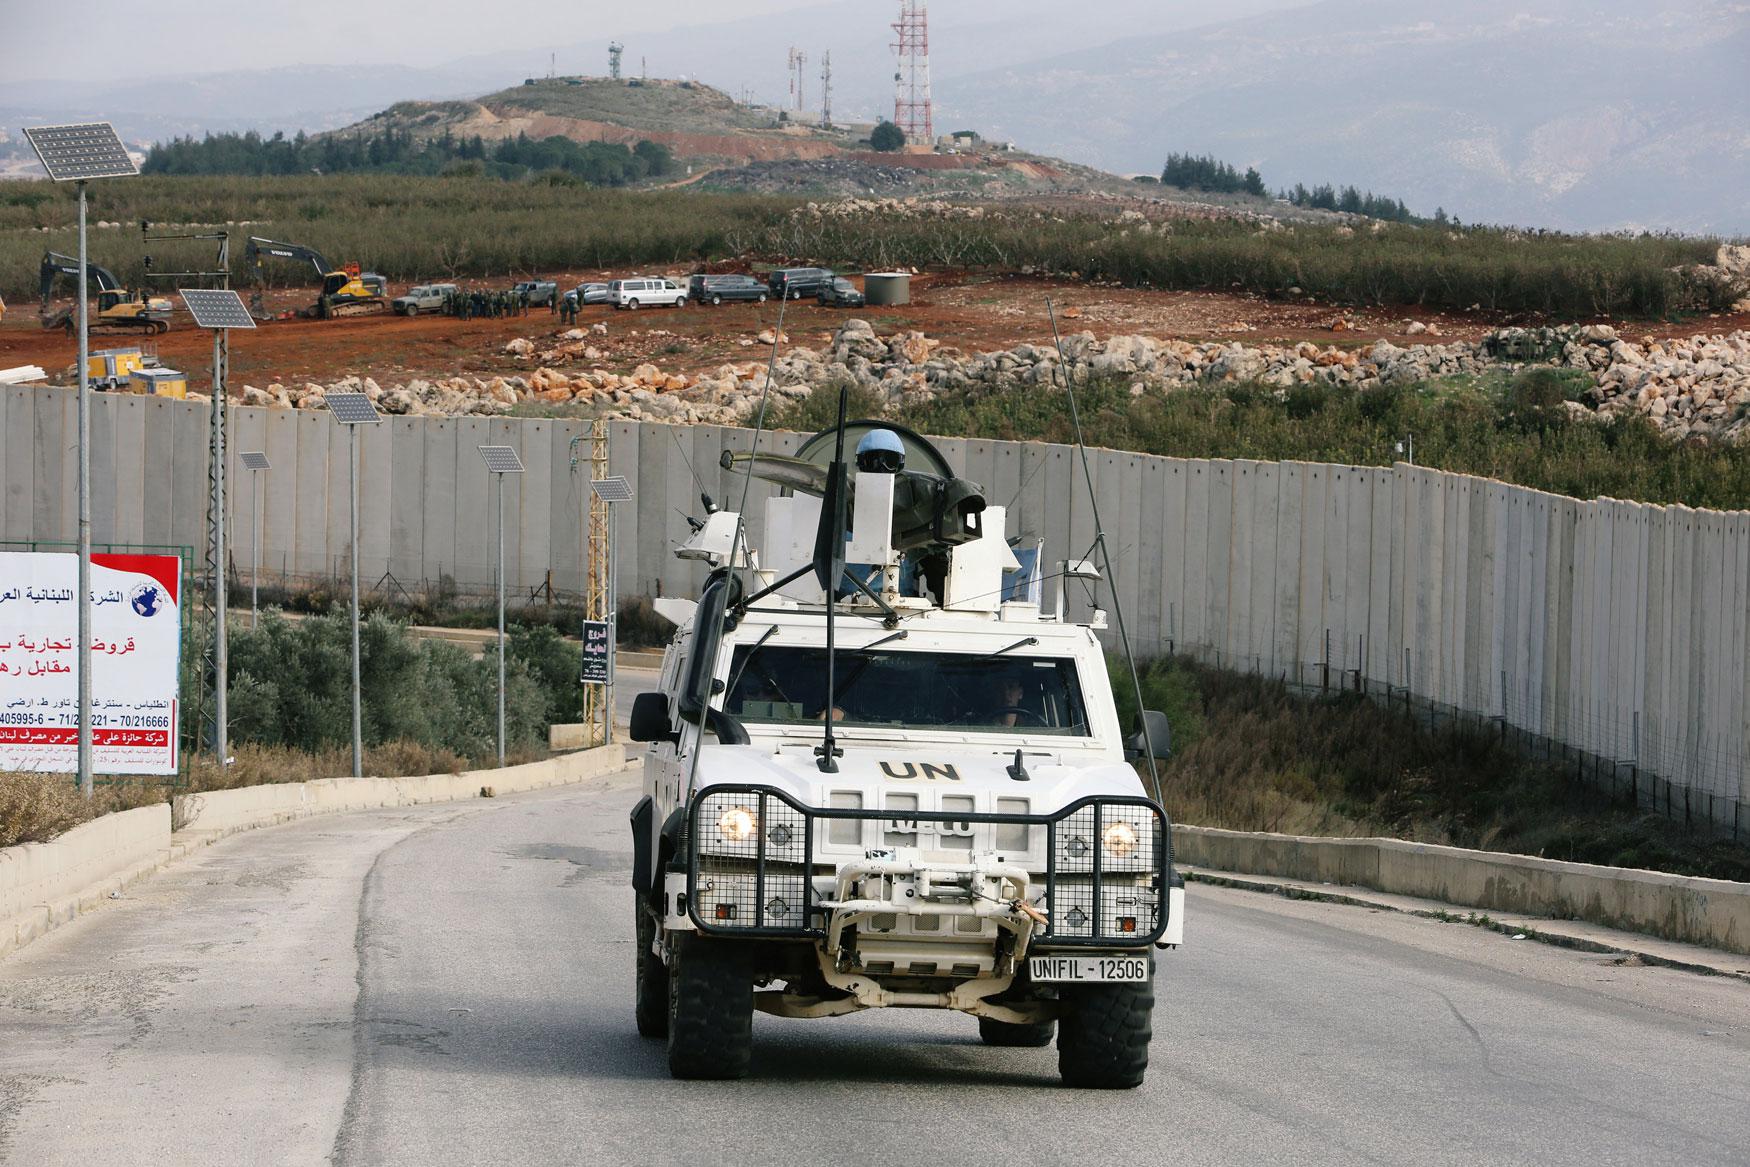 دوريات مكثفة لقوة اليونيفيل والقوات اللبنانية مع استنفار اسرائيلي عند الخط الأزرق